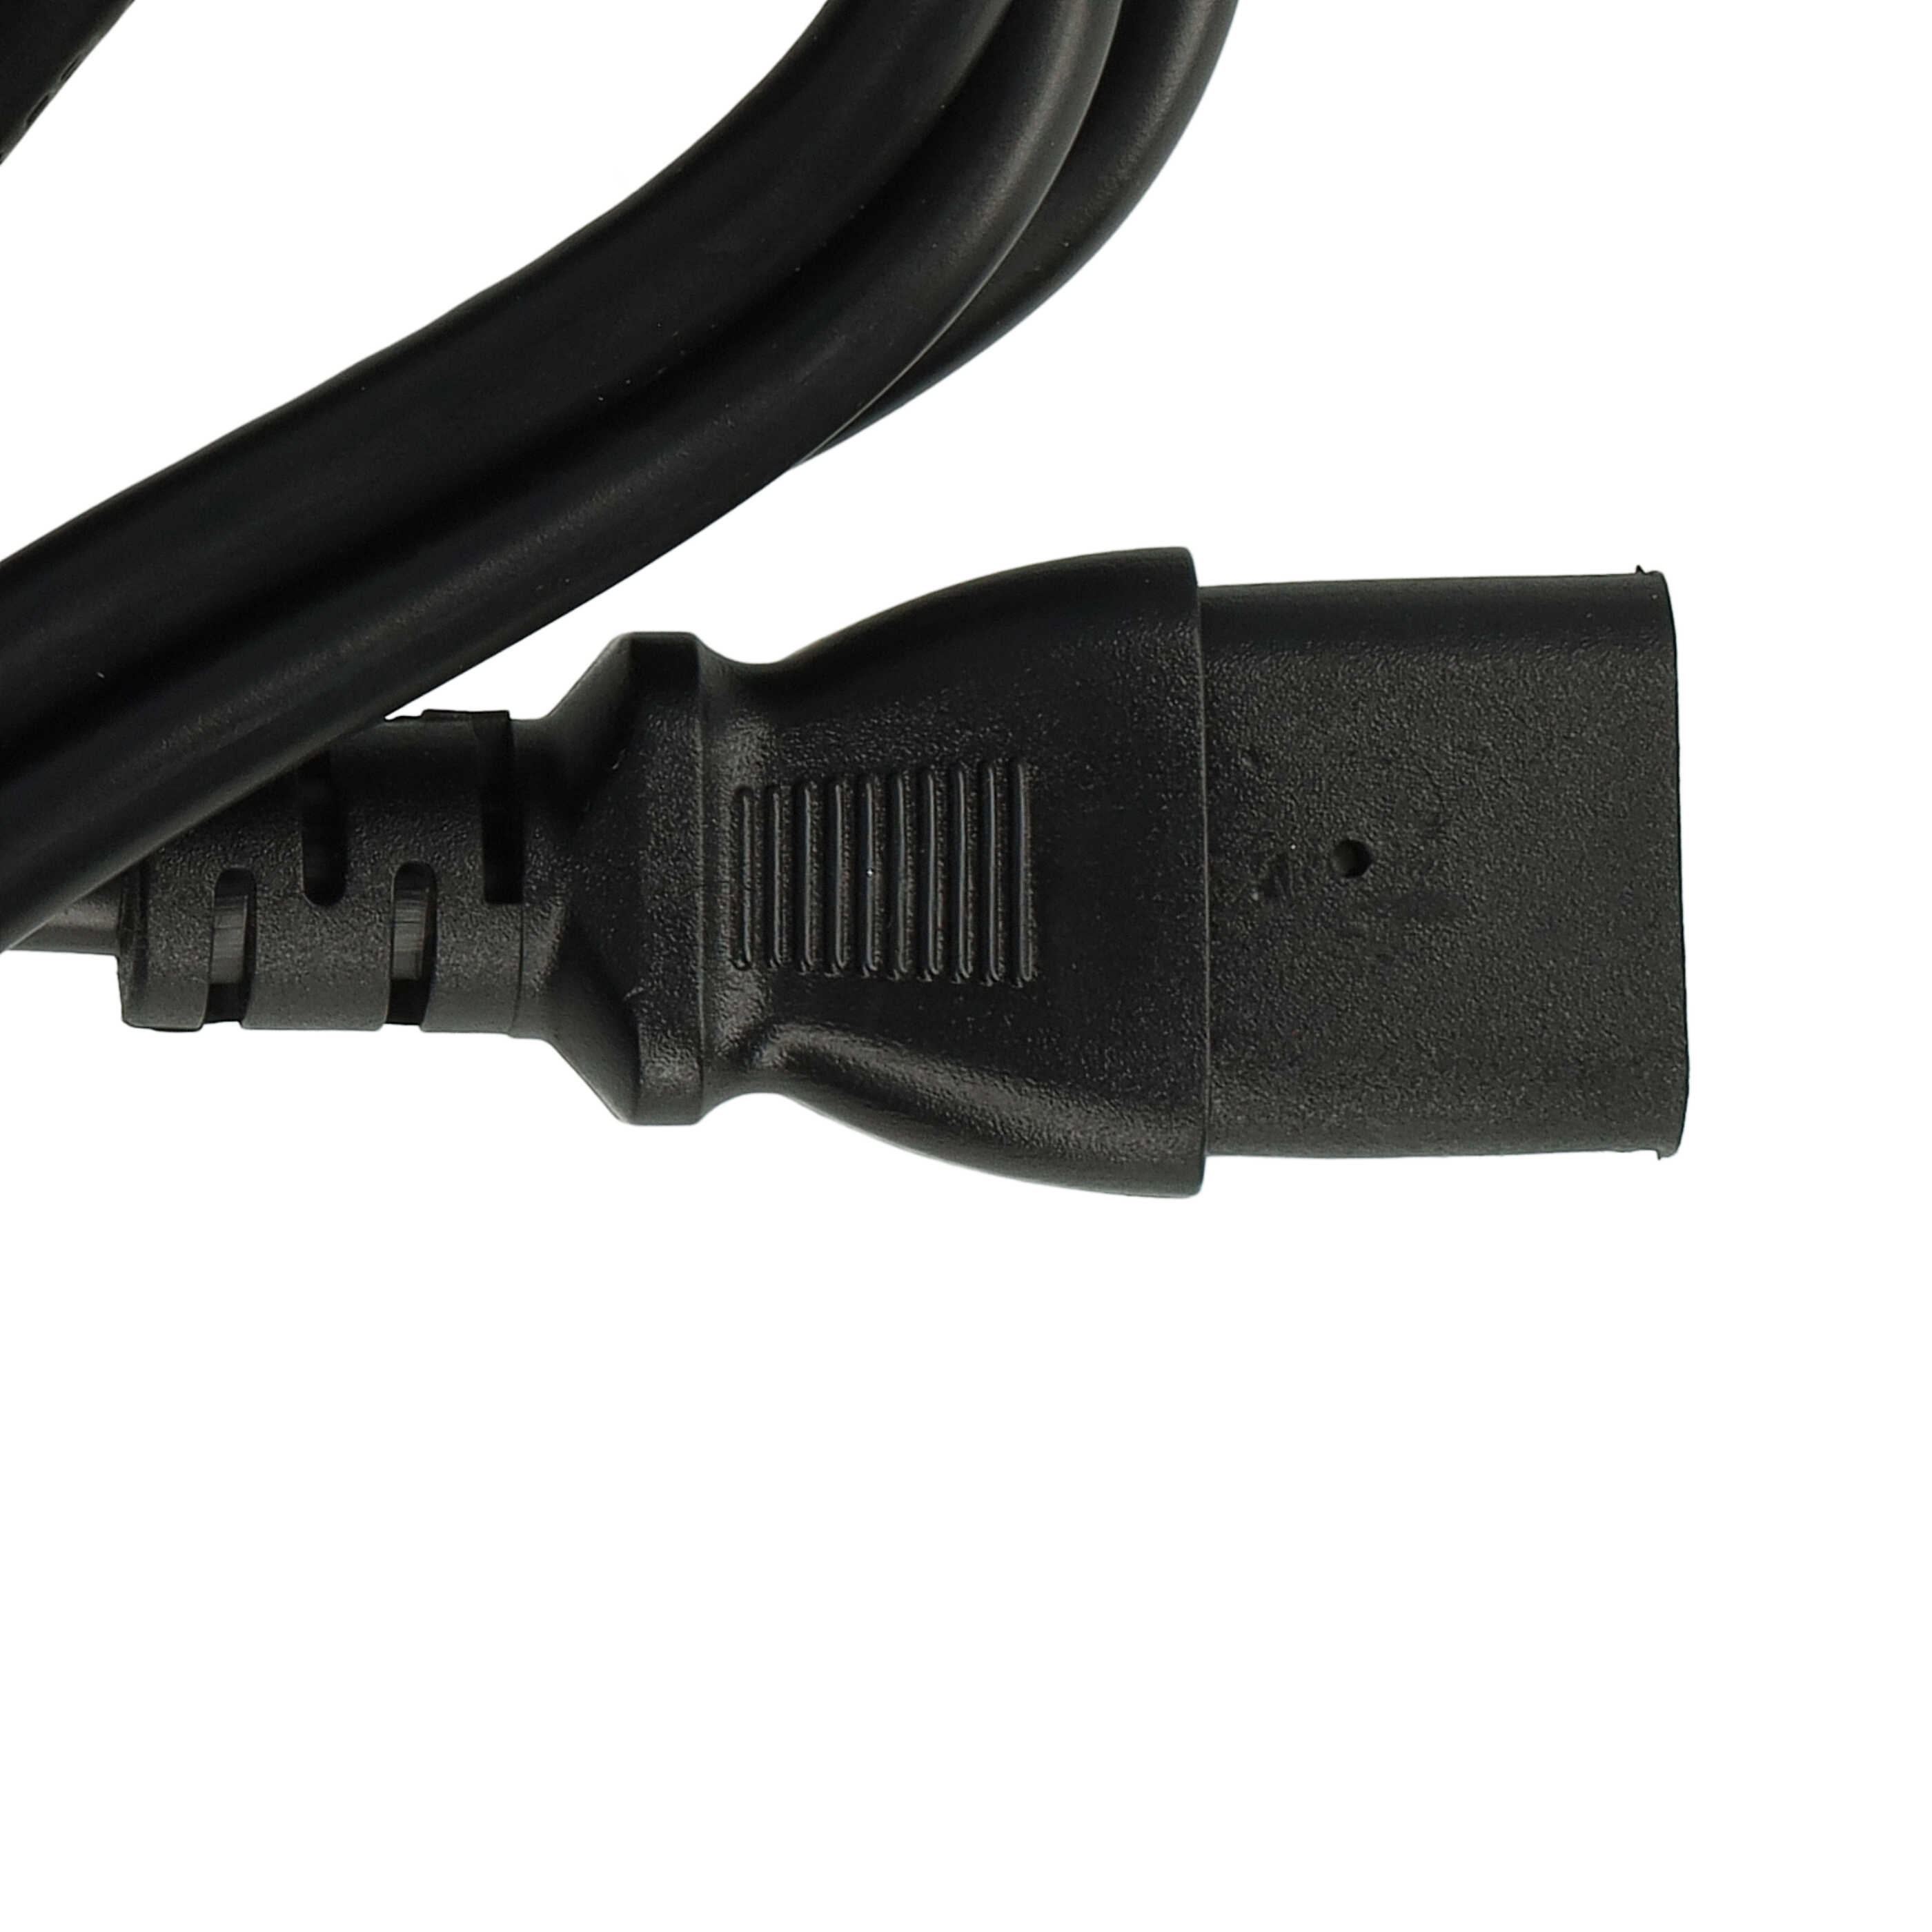 Cable de red C13 euroconector compatible con dispositivo IEC por ej. PC, monitor, ordenador - 1,2 m